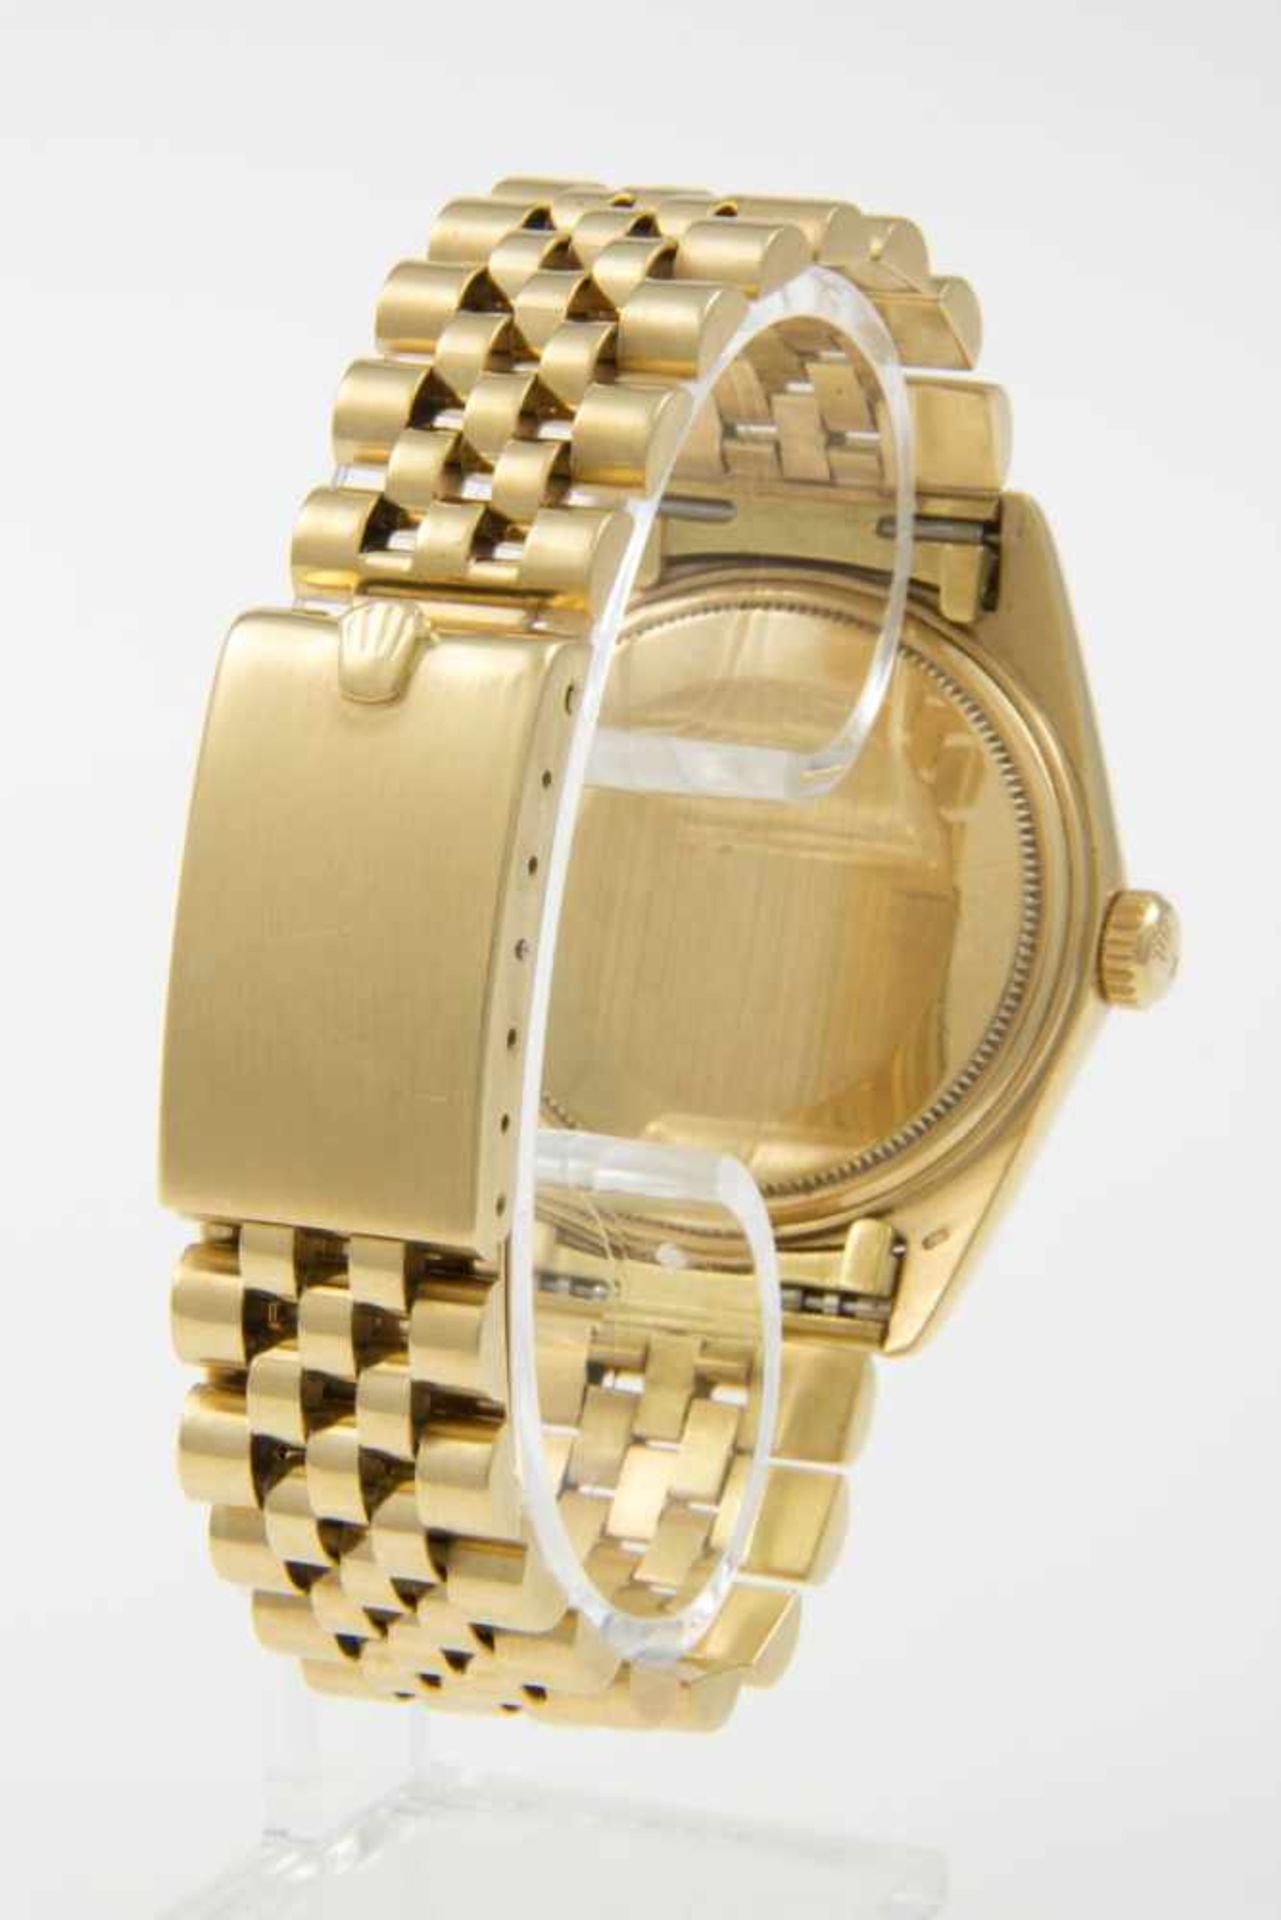 Rolex-Armbanduhr DatejustGehäuse und Armband aus Gelbgold 750. Plexiglas. Vergoldetes Zifferblatt - Bild 4 aus 4